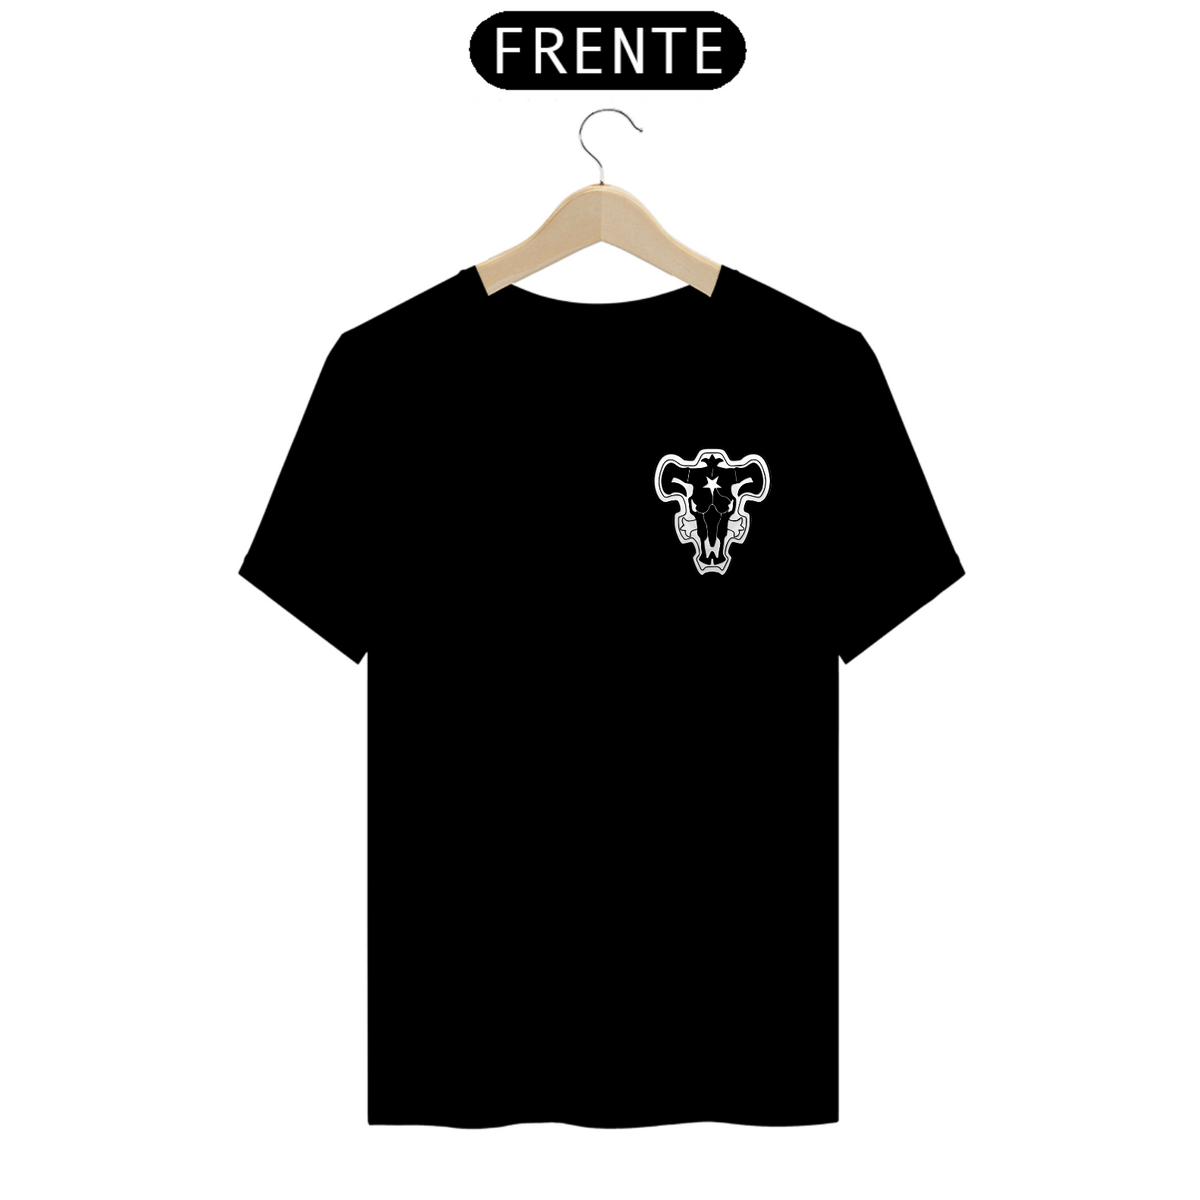 Nome do produto: Camisa símbolo Black cover